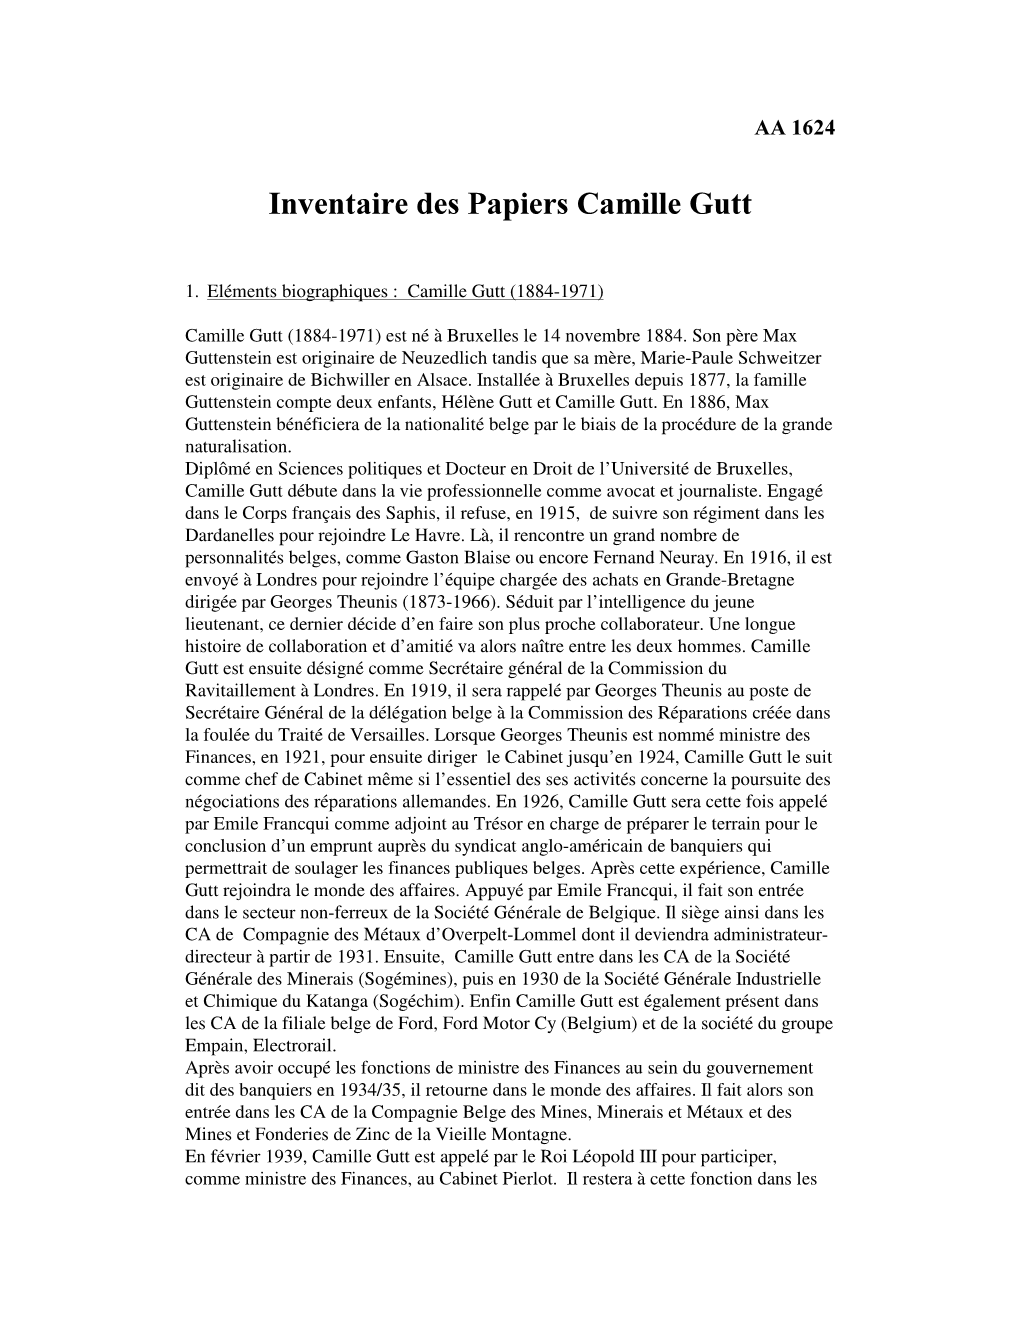 Inventaire Des Papiers Camille Gutt